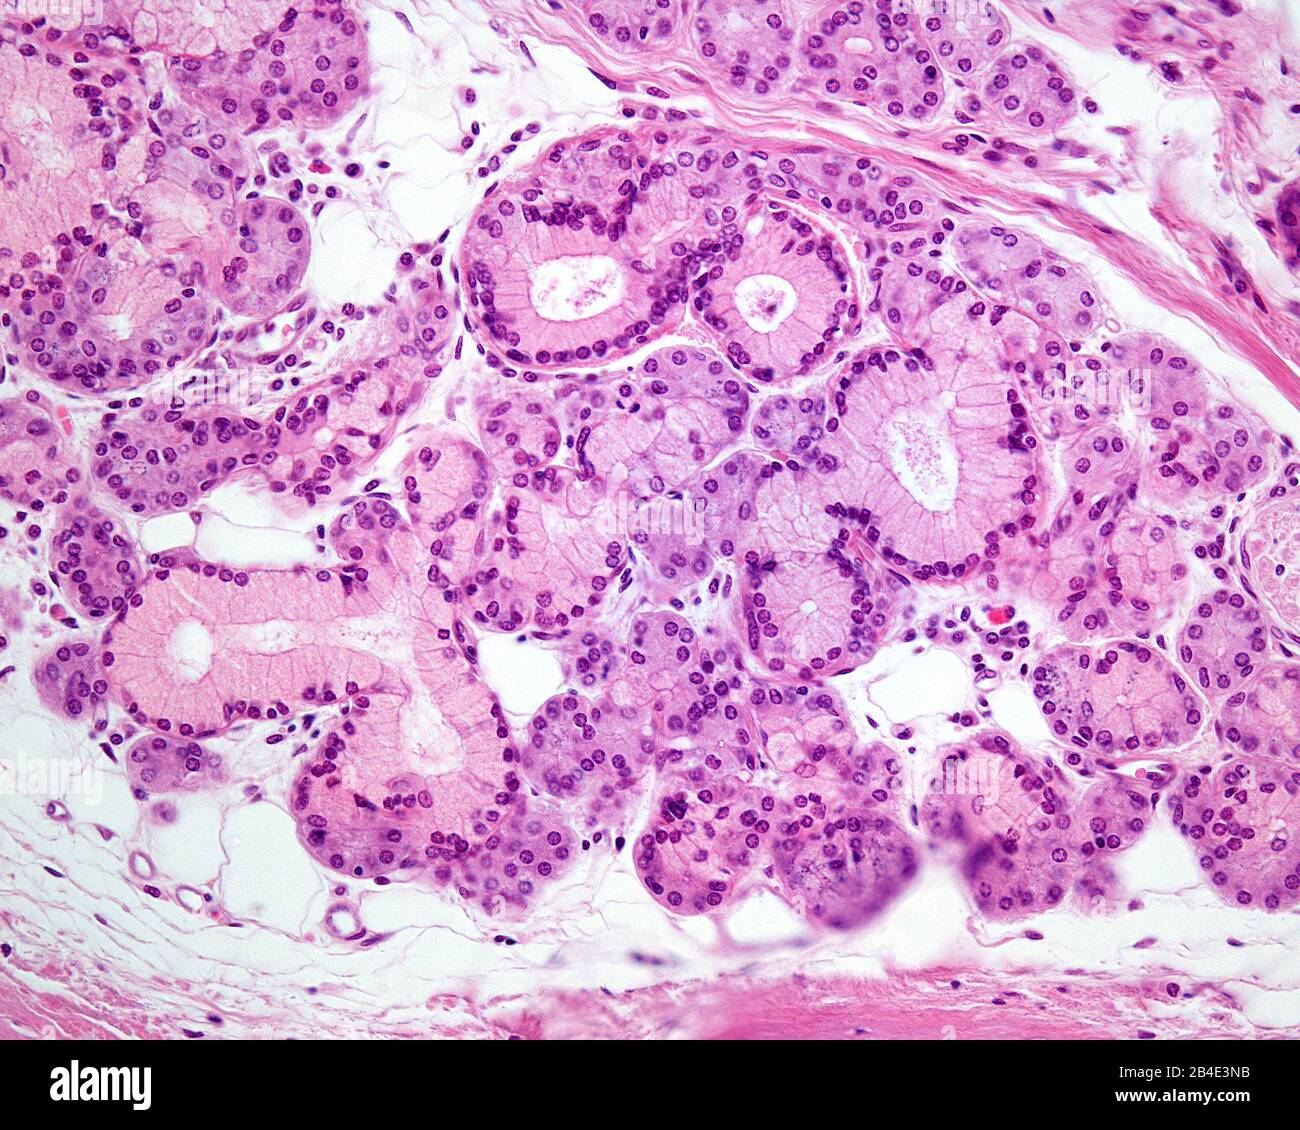 Ghiandola mista che mostra sia le cellule mucose (con citoplasma pallido) che le cellule sierose nella stessa ghiandola. Micrografia al microscopio ottico. Colorazione con ematossilina ed eosina Foto Stock